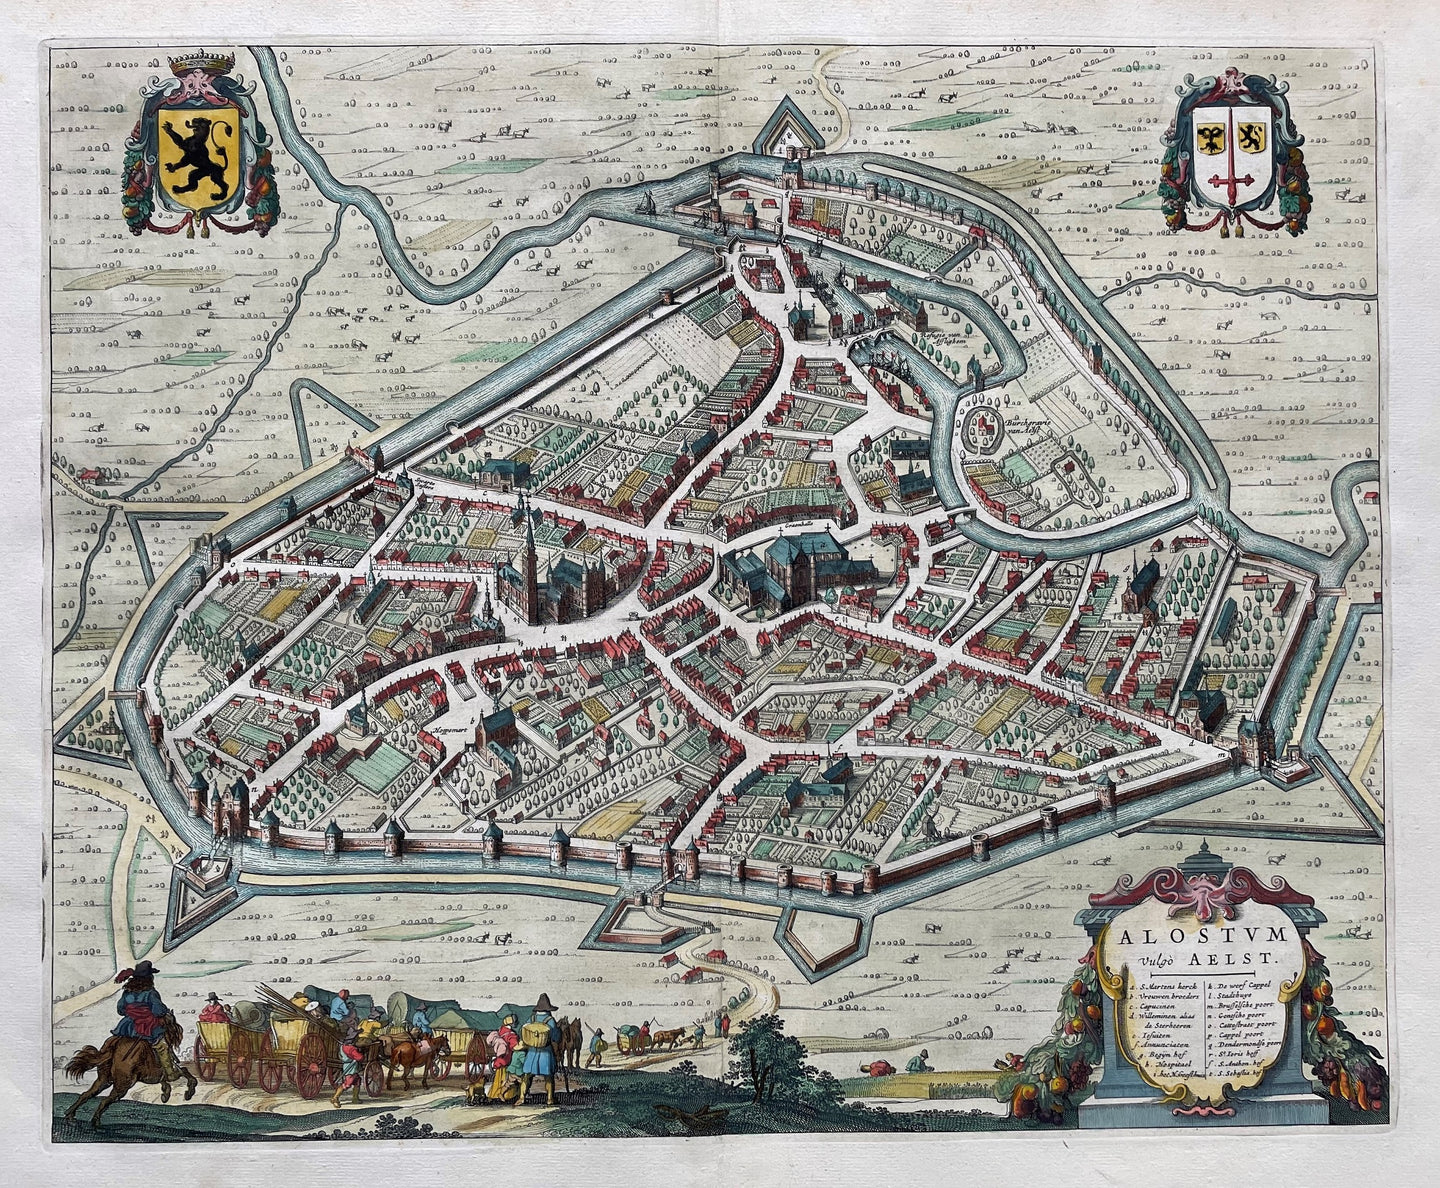 België Aalst Belgium Stadsplattegrond in vogelvluchtperspectief - J Blaeu - 1649